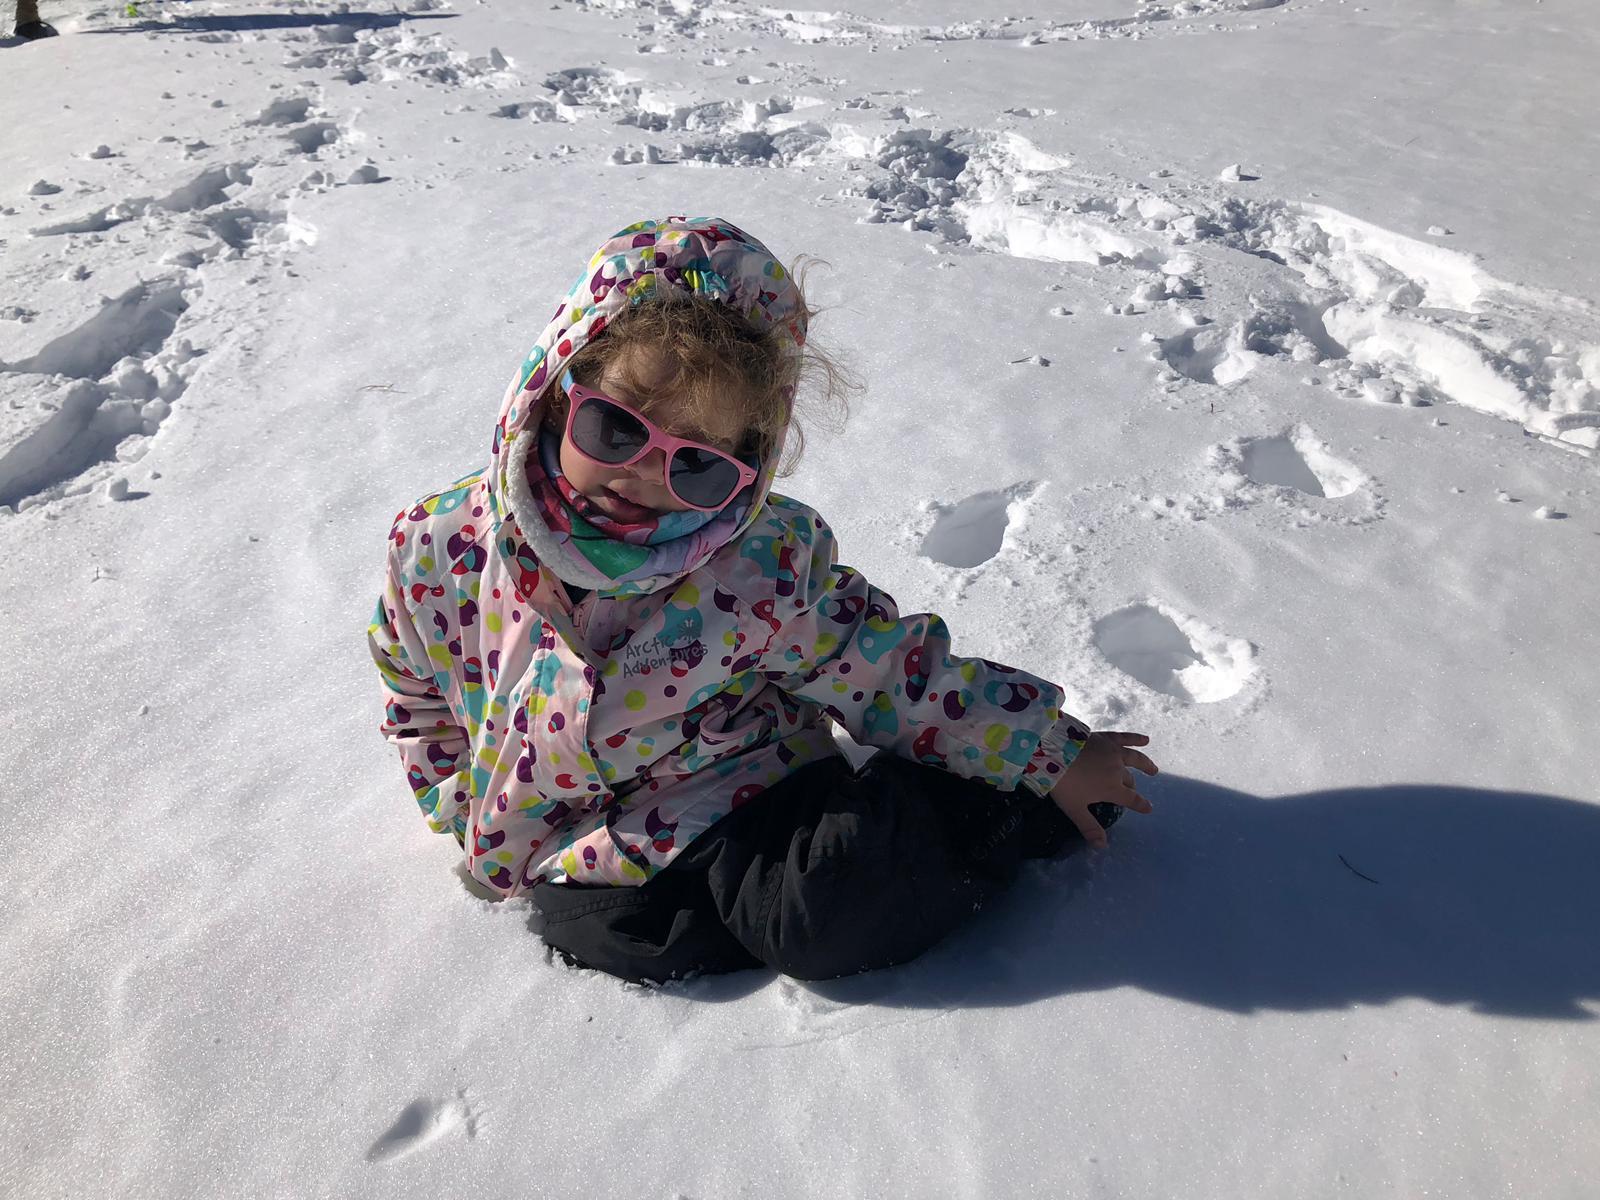 ▷ Cómo Proteger los Ojos de los Niños en la Nieve